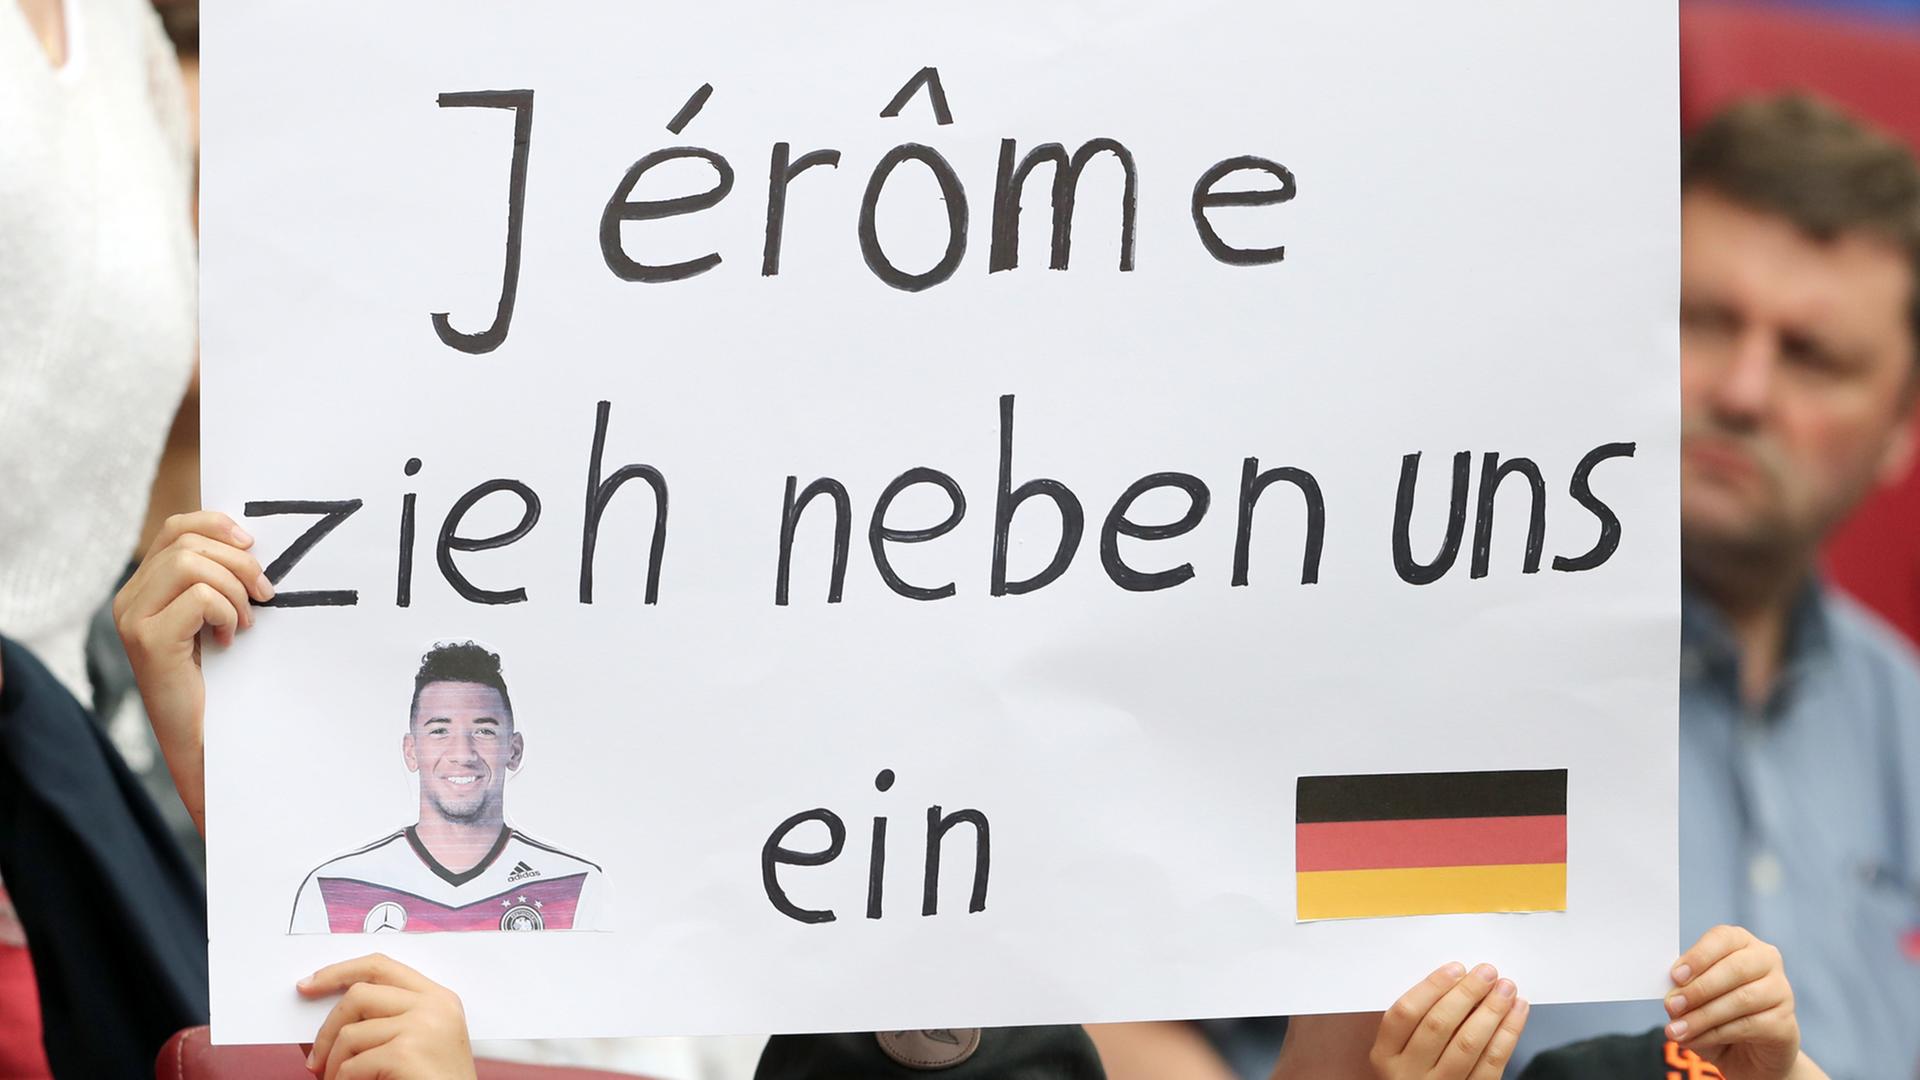 Deutsche Fußballfans zeigen vor Spielbeginn ein Plakat mit der Aufschrift "Jerome zieh neben uns ein" 